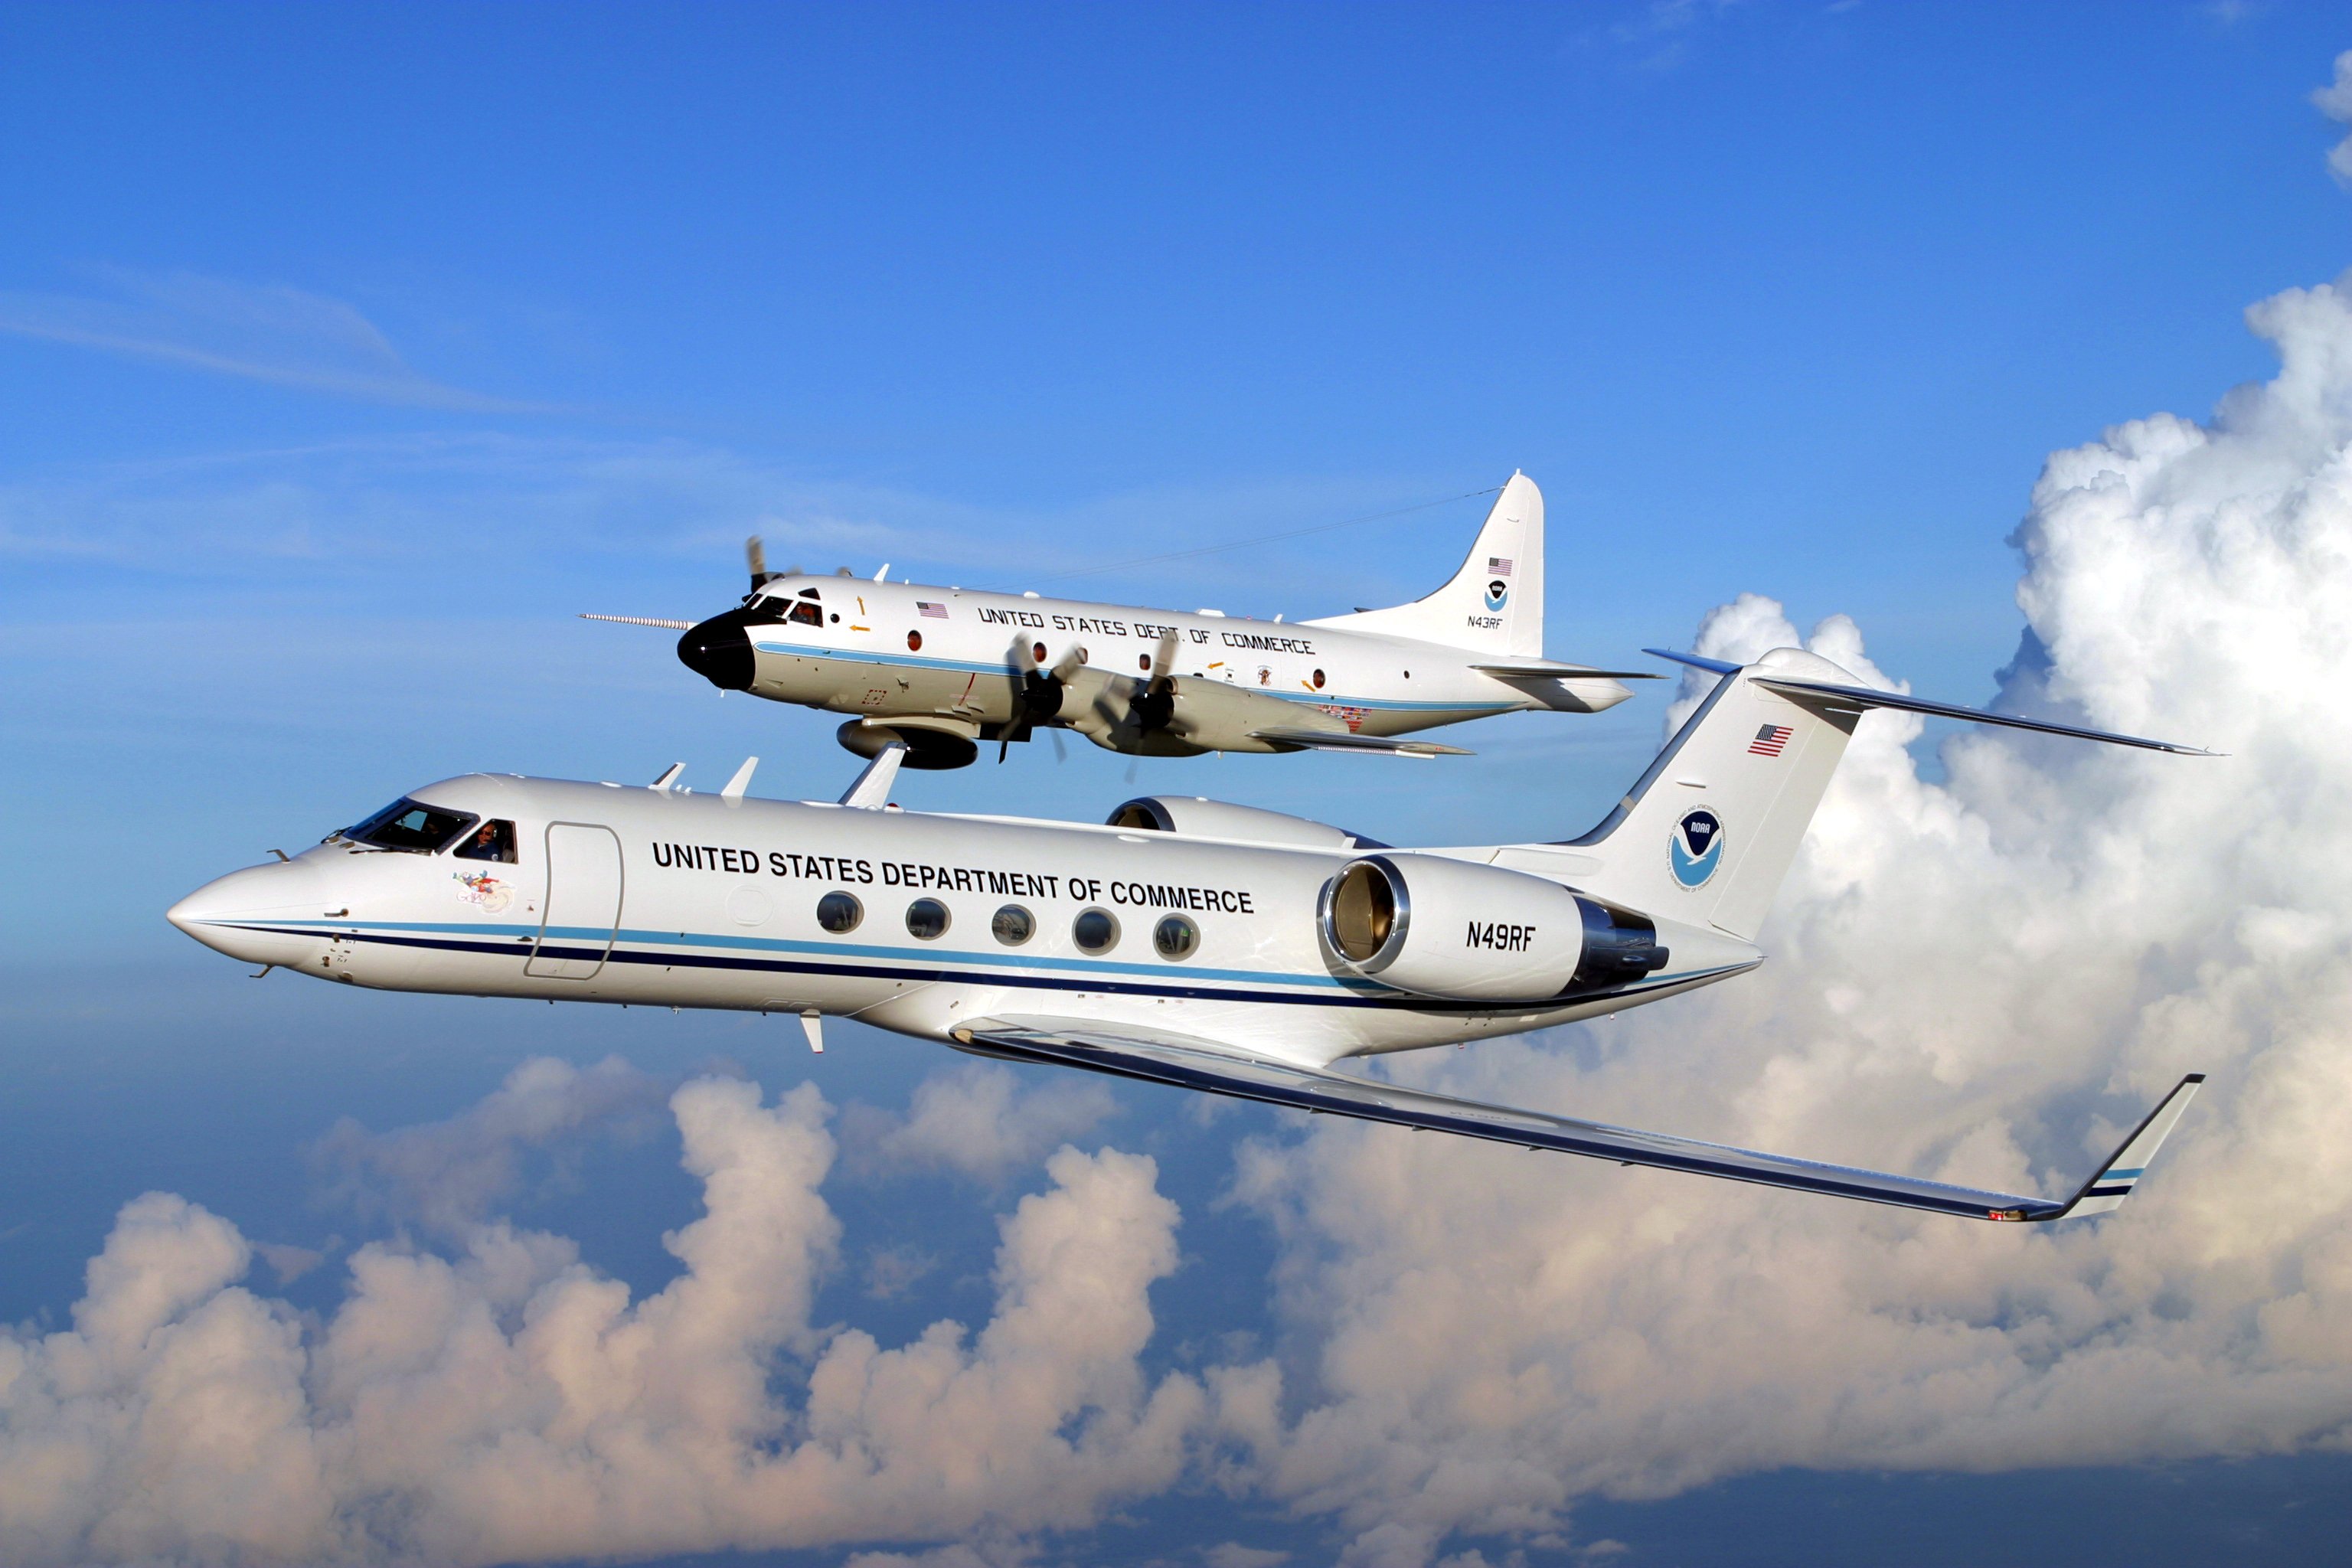 NOAA Gulfstream IV (N49RF) and WP-3 Hurricane Hunter (N34RF)